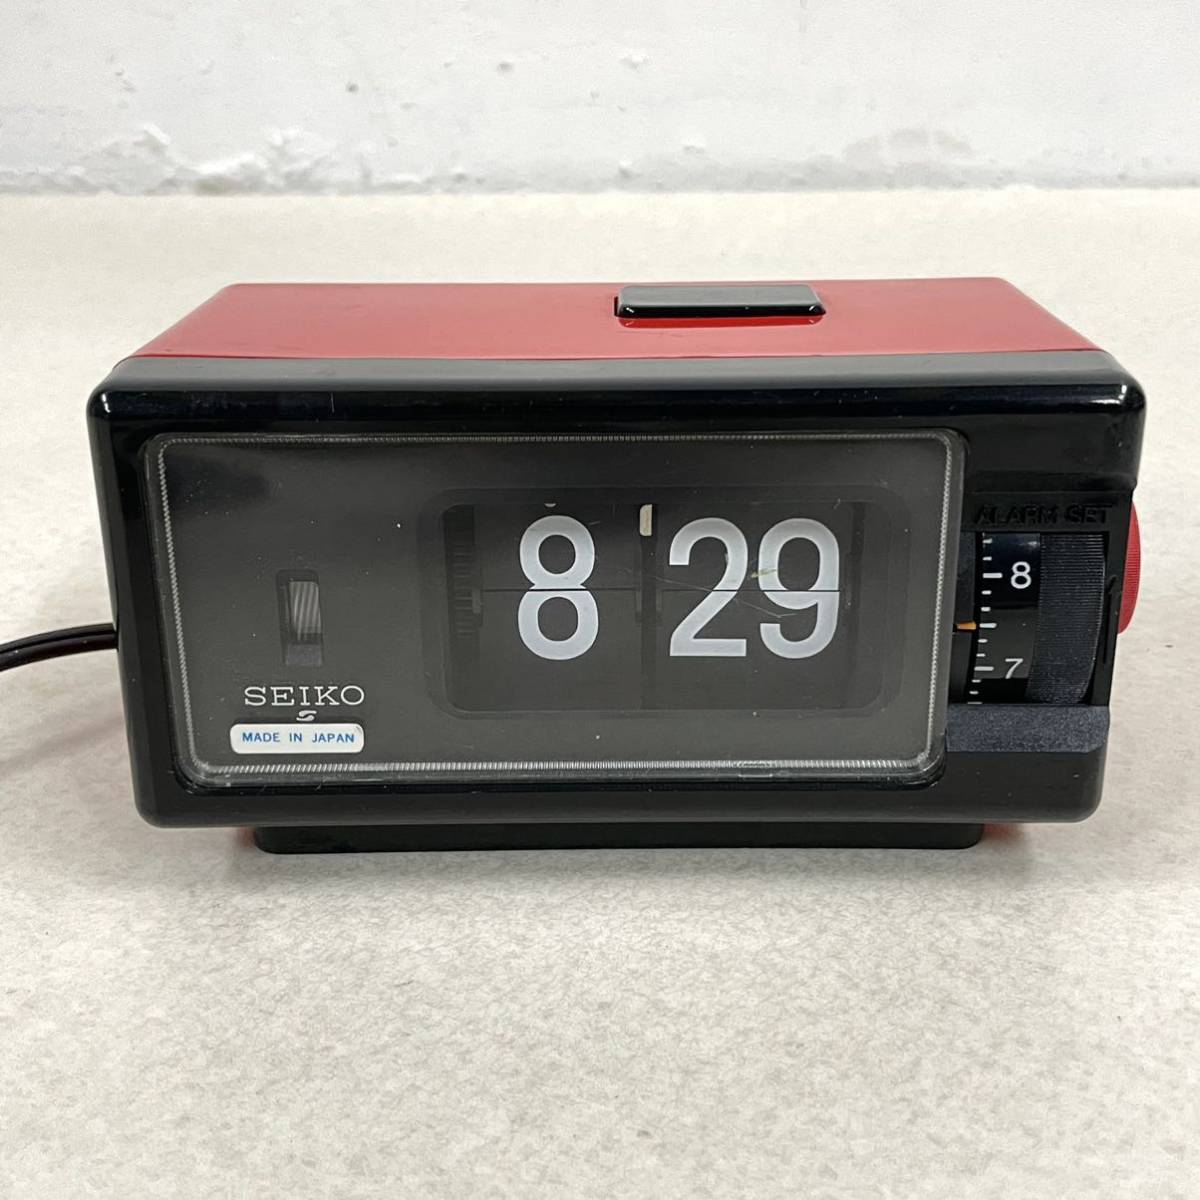 SEIKO セイコー パタパタ時計 DP690T 赤色 置時計 訳あり アナログ アラーム 昭和レトロ_画像1